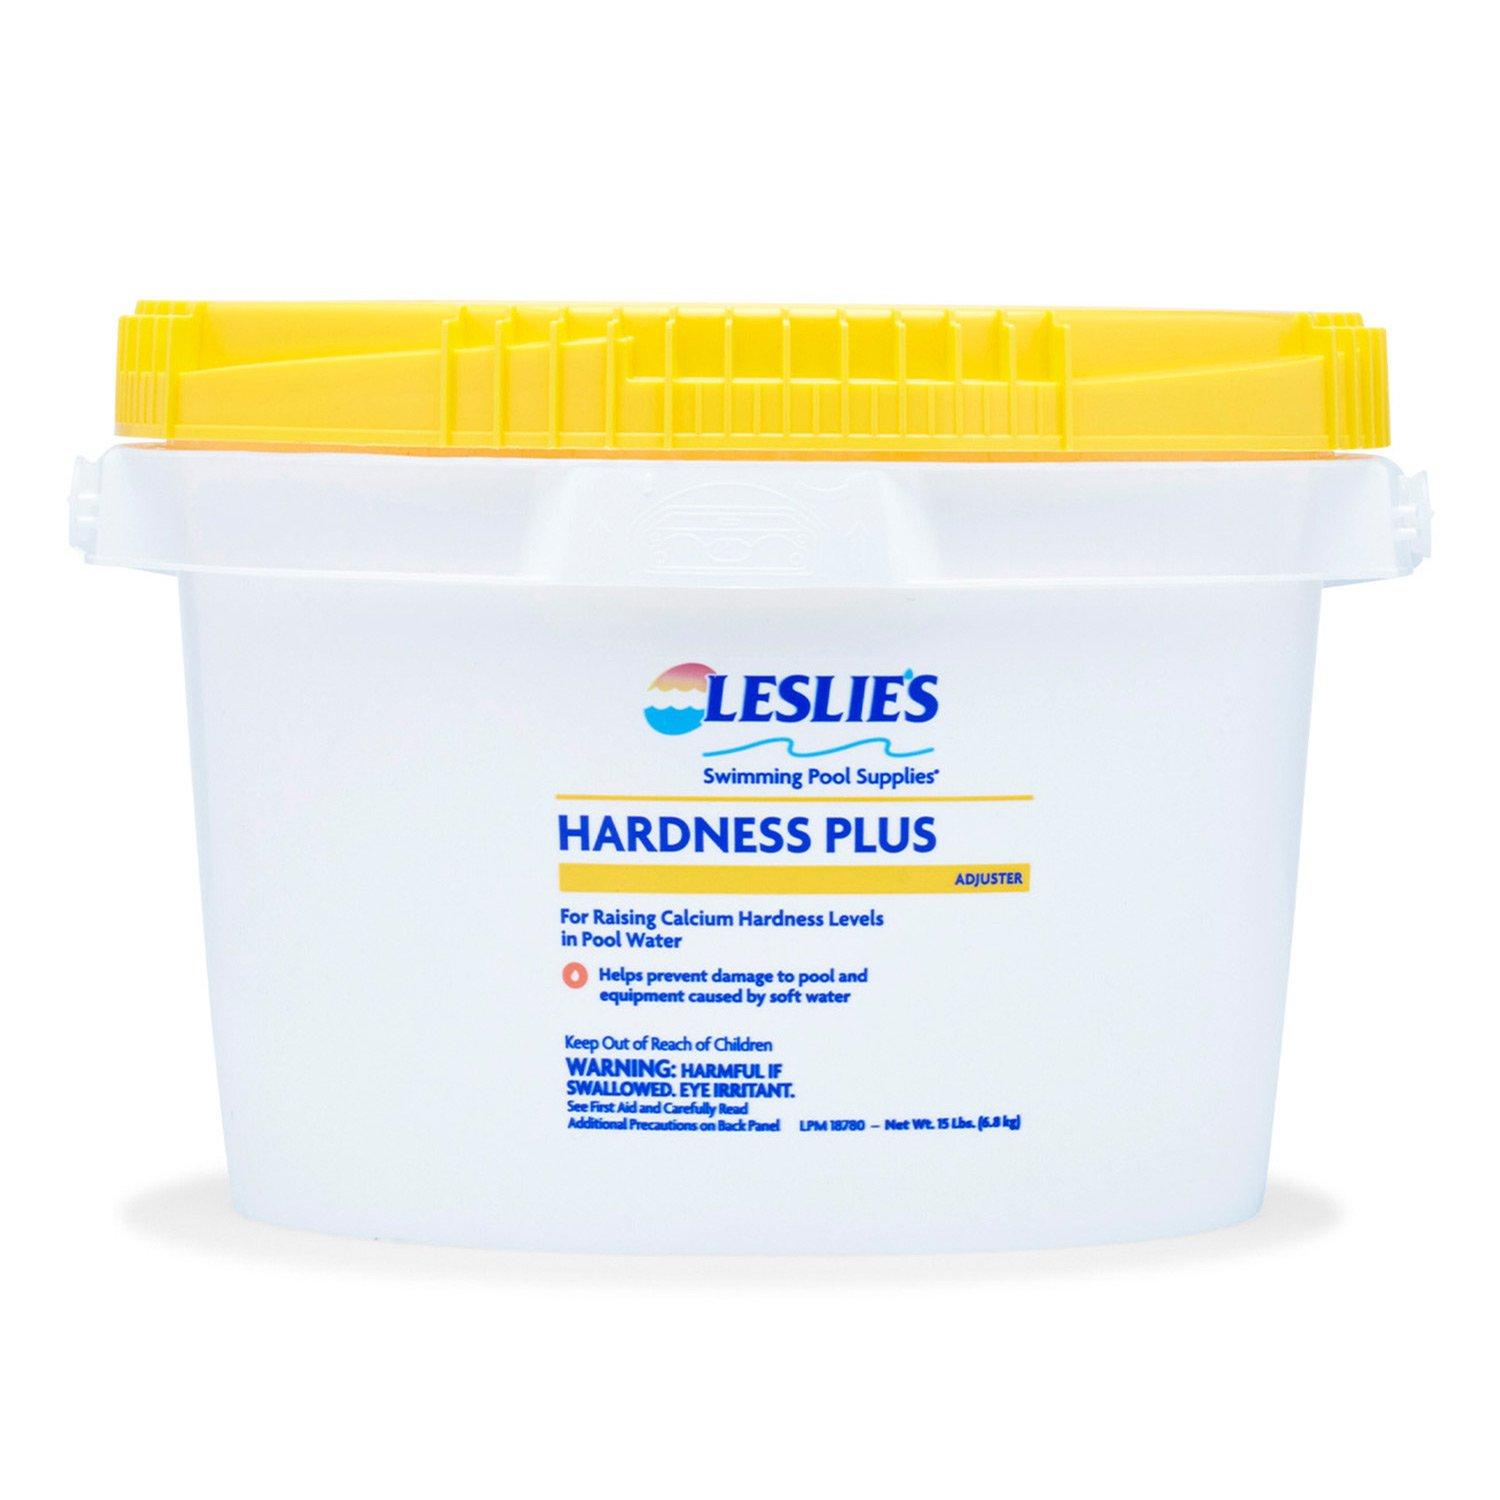 Leslie's  Hardness Plus for Calcium Hardness